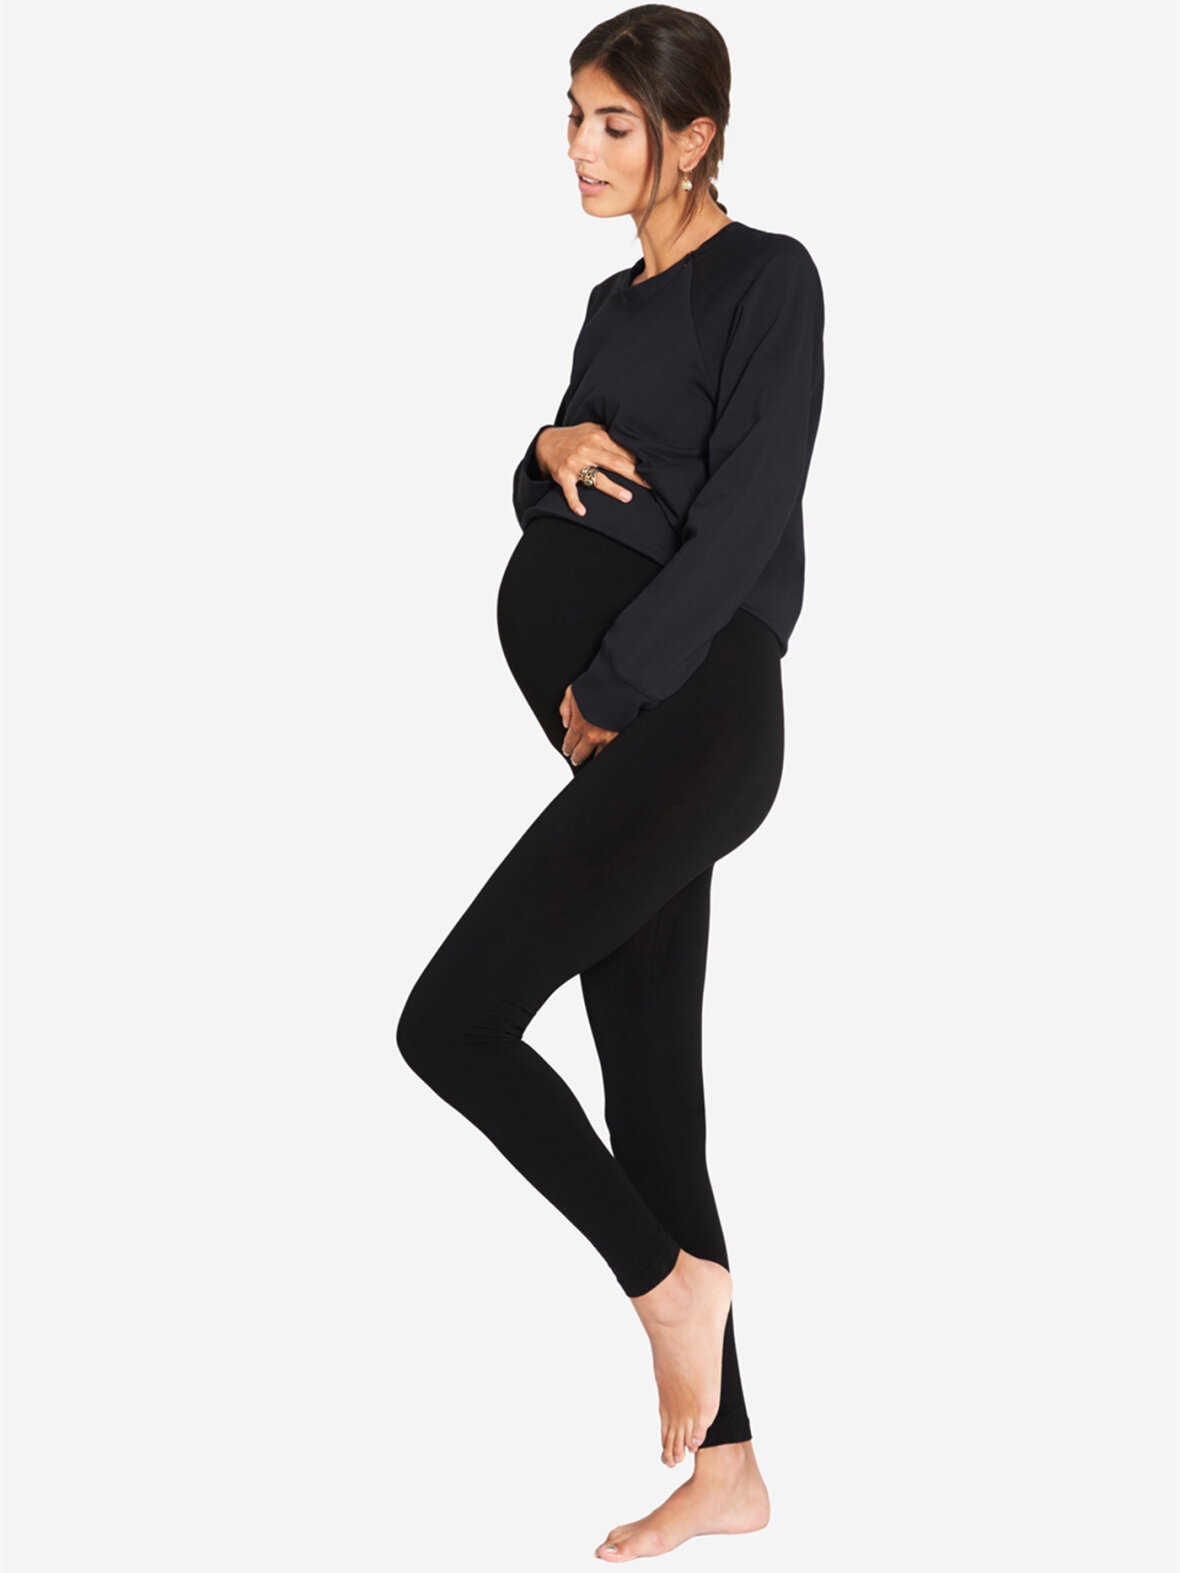 let at håndtere Synlig Urter Enula9 - Gravid træning & yoga - Milker - Birdy gravid leggings, sort